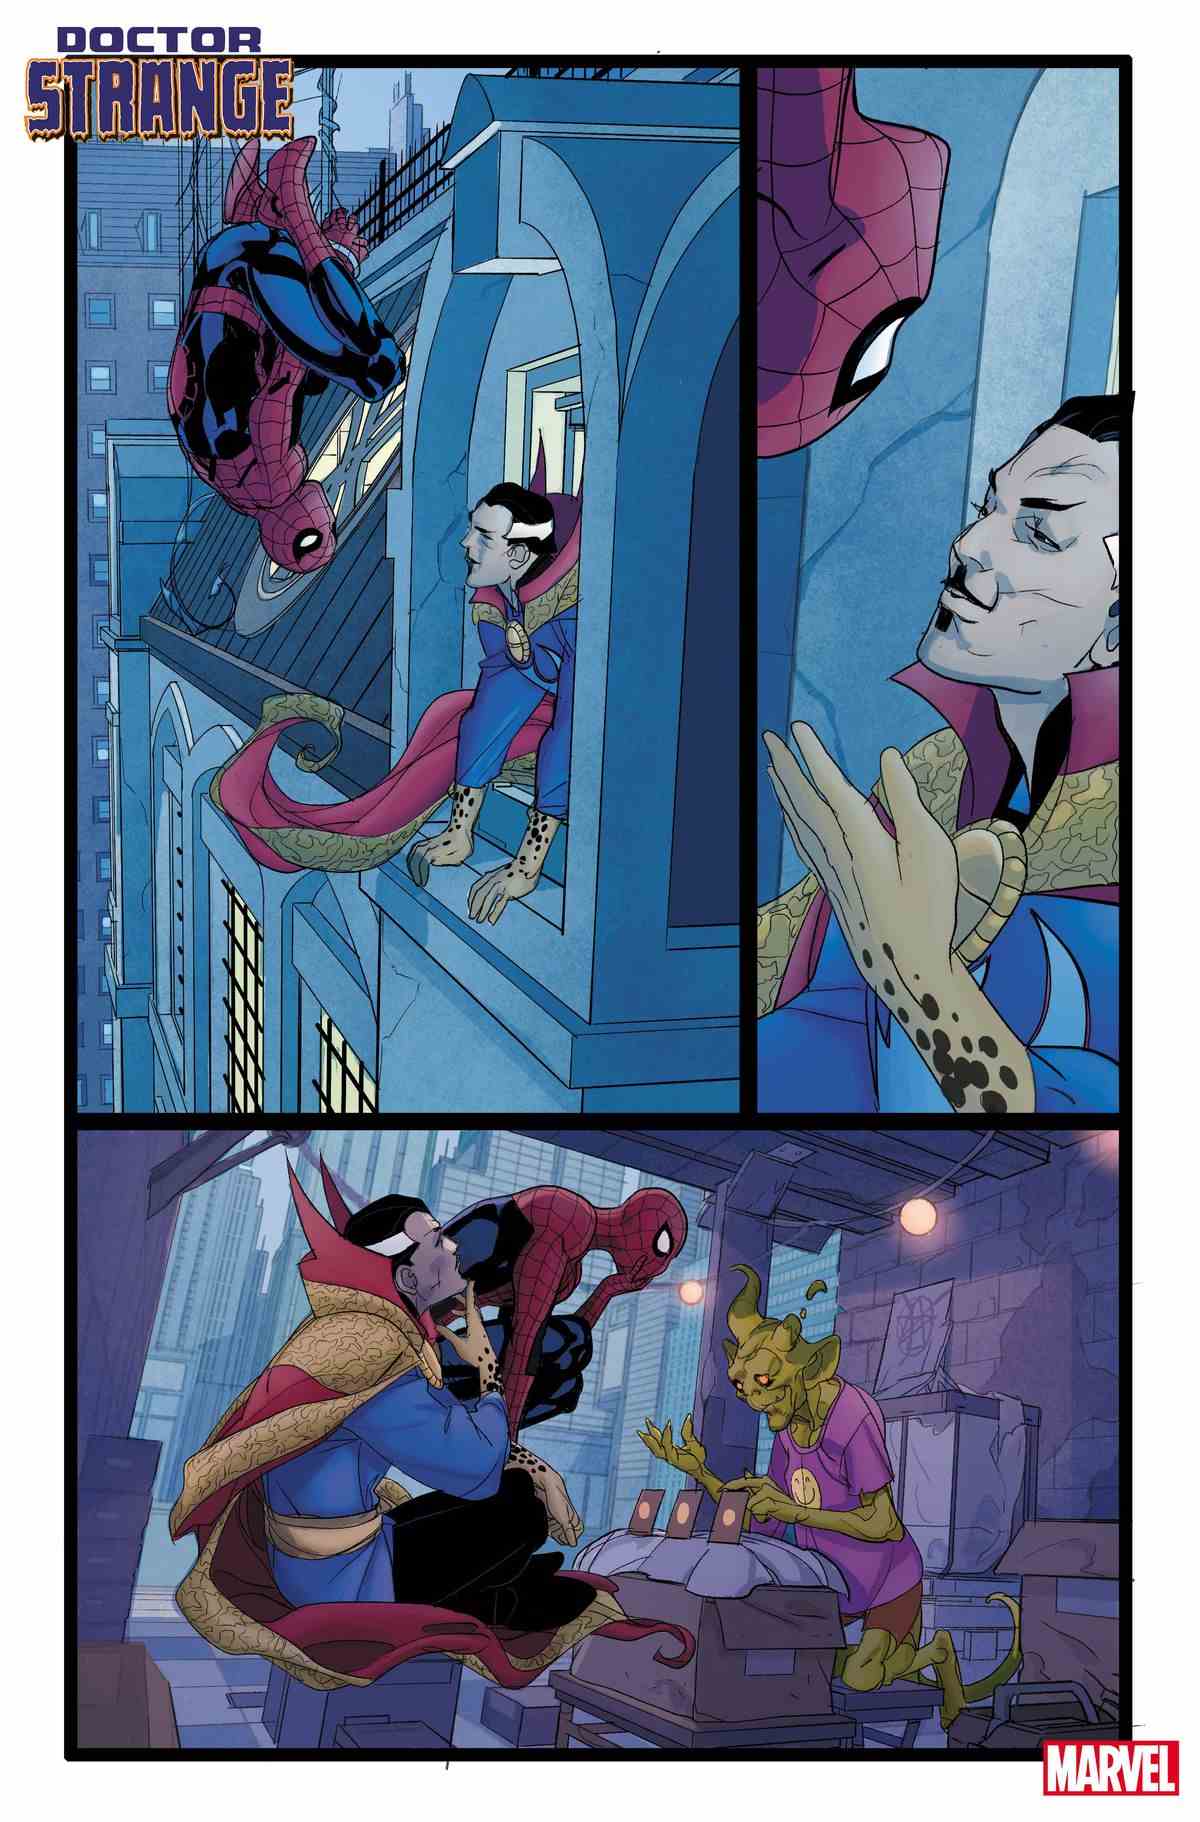 Le docteur Strange discute avec Spider-Man à travers une fenêtre, puis dans un magasin de fantaisie quelconque, dans une page inachevée de Doctor Strange # 1 (2023).